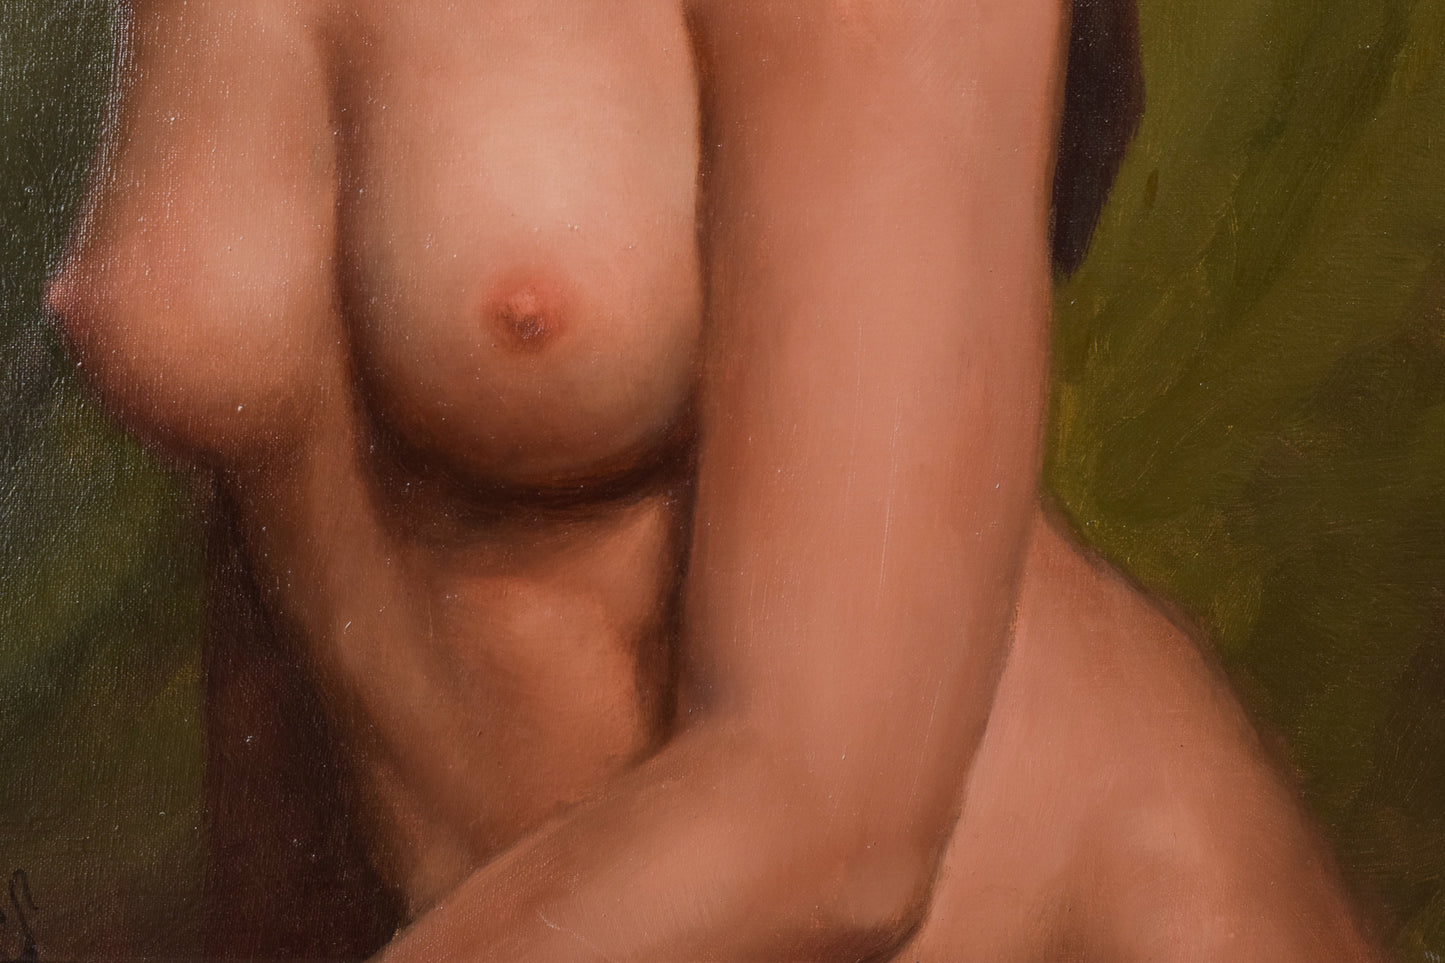 Jordi Bernaus - Nude Life Portrait